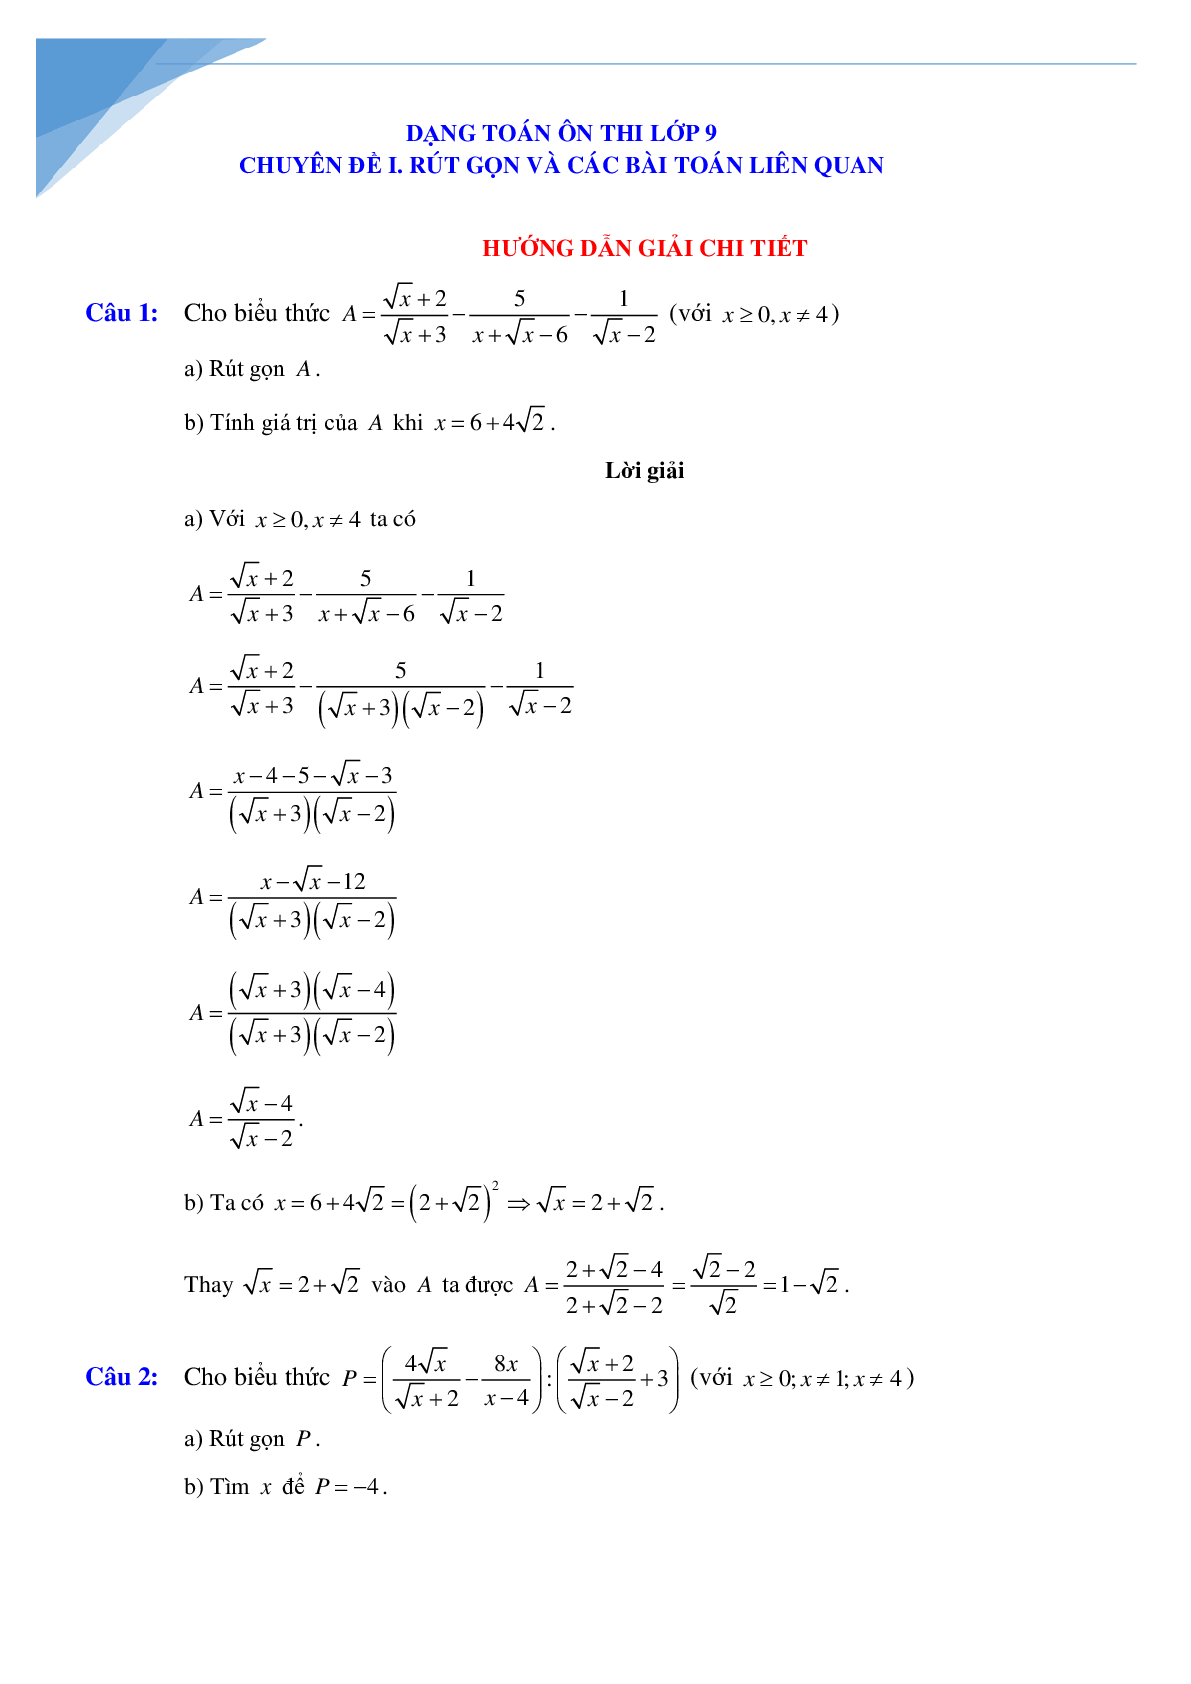 Rút gọn biểu thức và bài toán liên quan (trang 4)